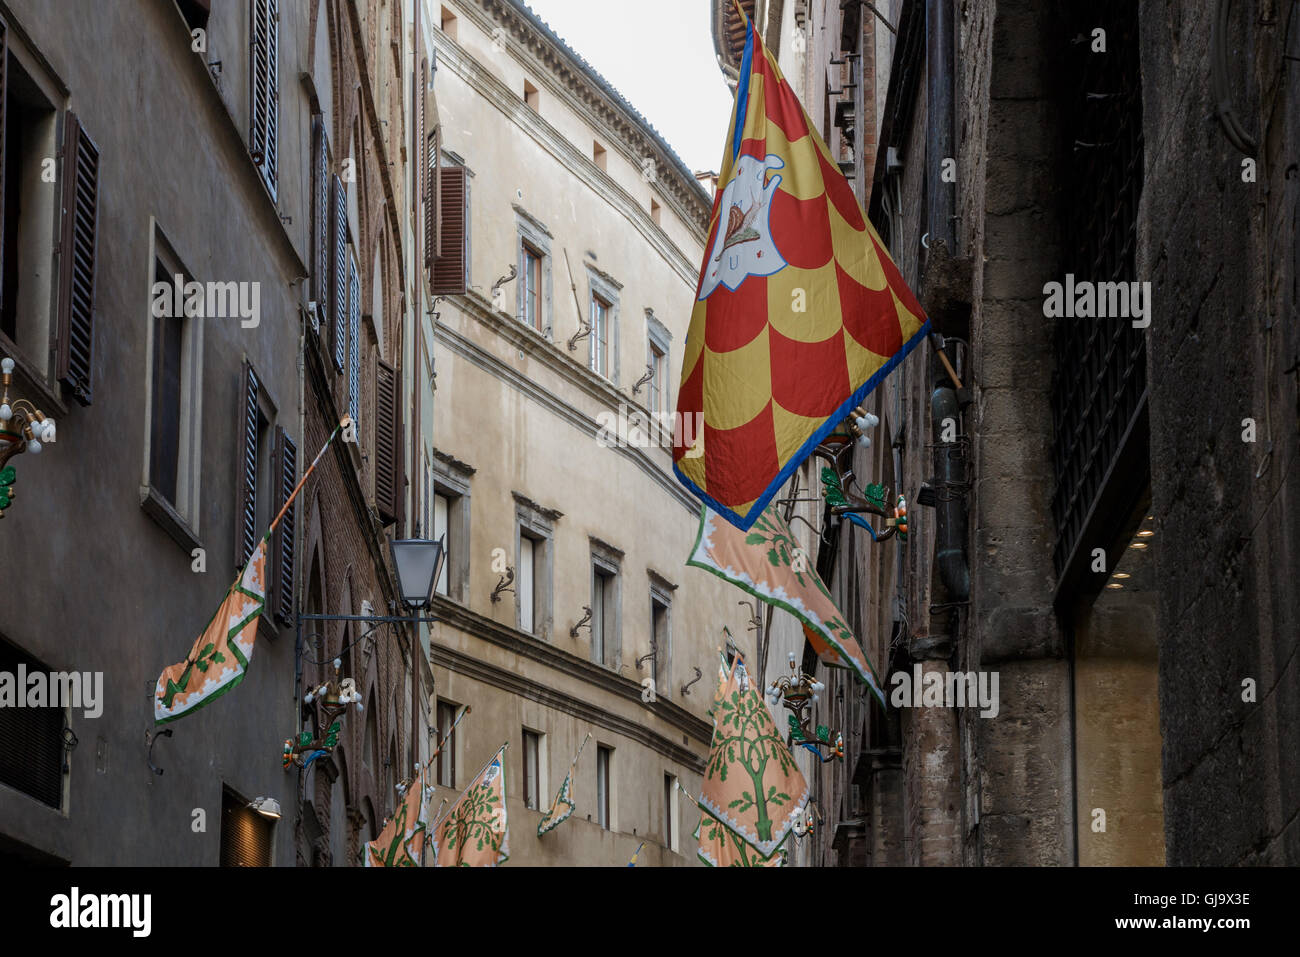 Les drapeaux de la Contrade, tapissant les rues de Sienne, Toscane, Italie Banque D'Images